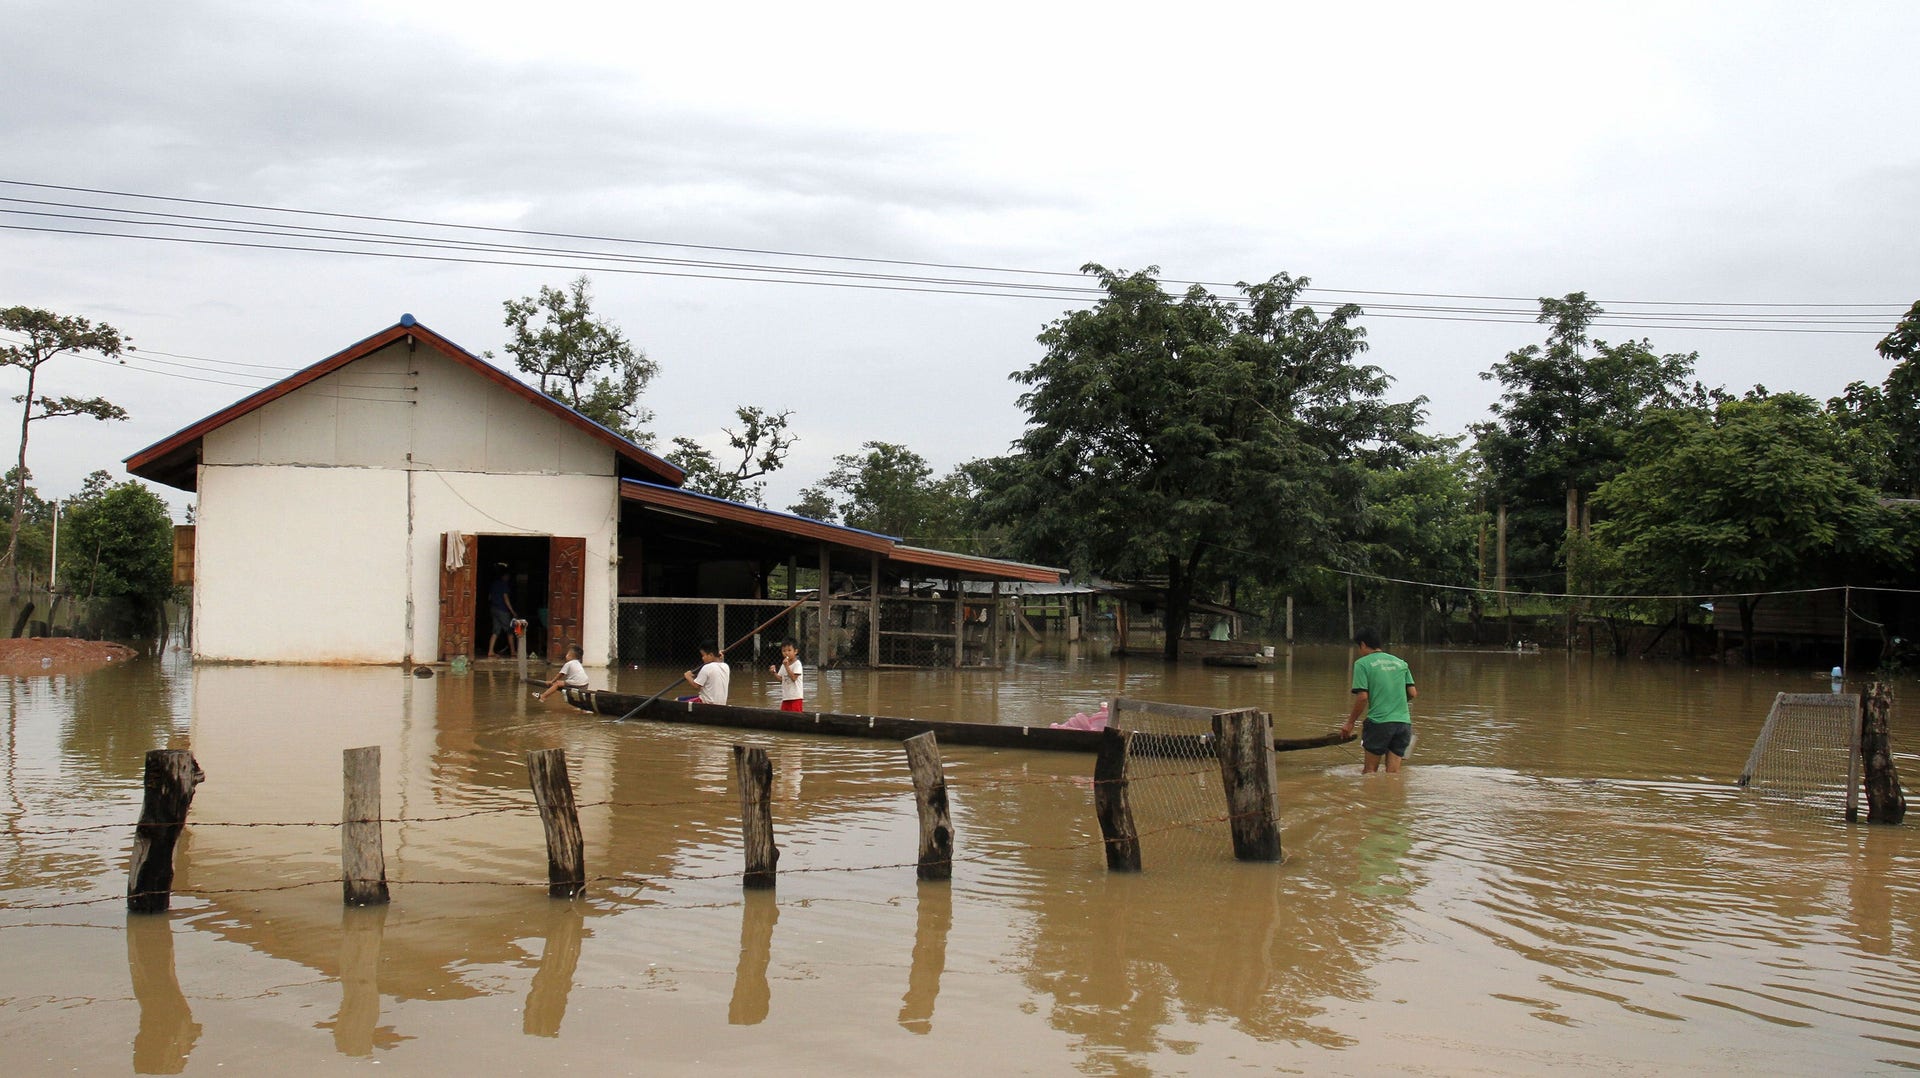 Många hus har översvämmats, som här i Sanamxai i Attapeu-provinsen. Enligt Reuters har 2.851 personer evakuerats från det drabbade området och omkring 3.000 människor är fortfarande i behov av hjälp.